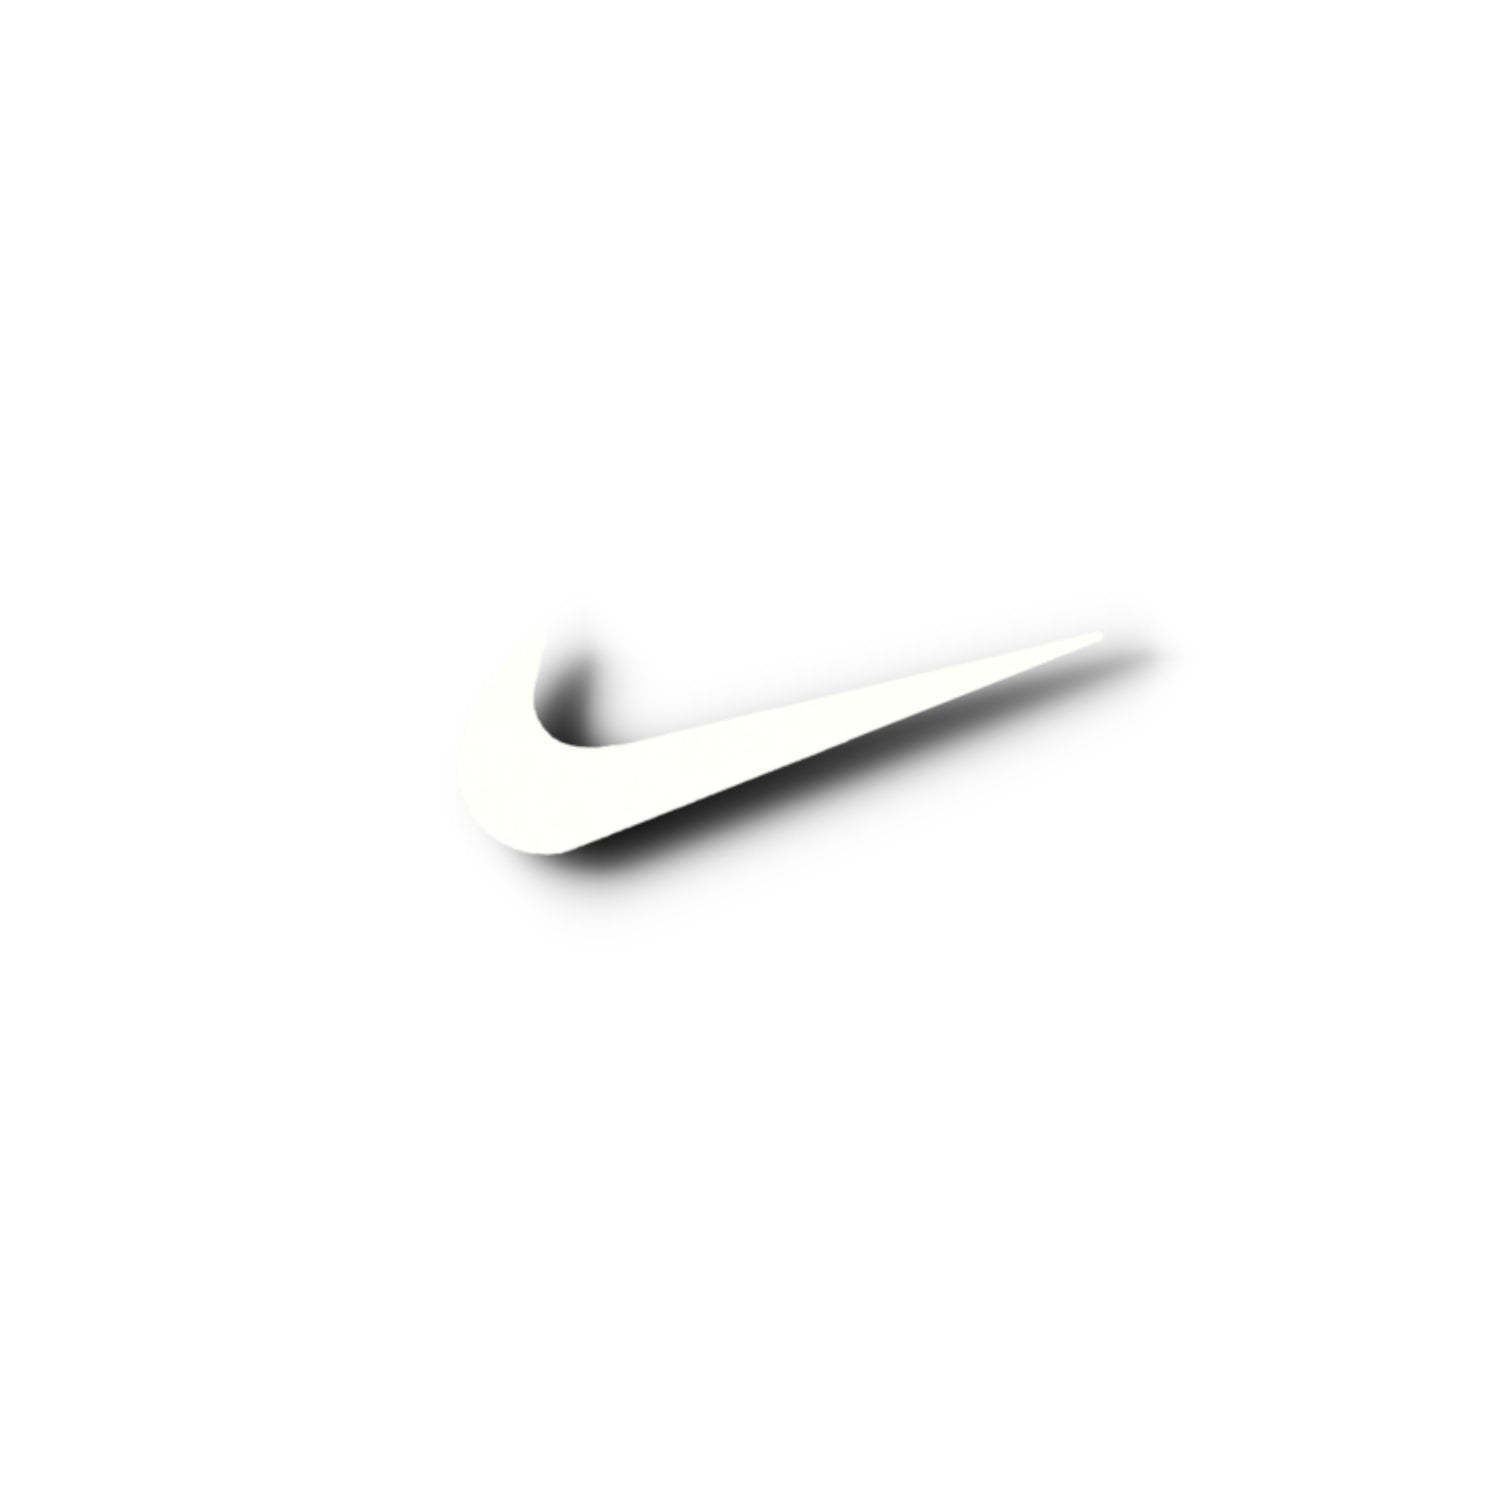 Với hình ảnh Nike vintage logo, bạn sẽ cảm nhận được sự cổ điển, lịch sự của thương hiệu Nike. Thưa bạn, không phải lúc nào cũng cần sự hiện đại để ghi dấu ở đời, phải không?